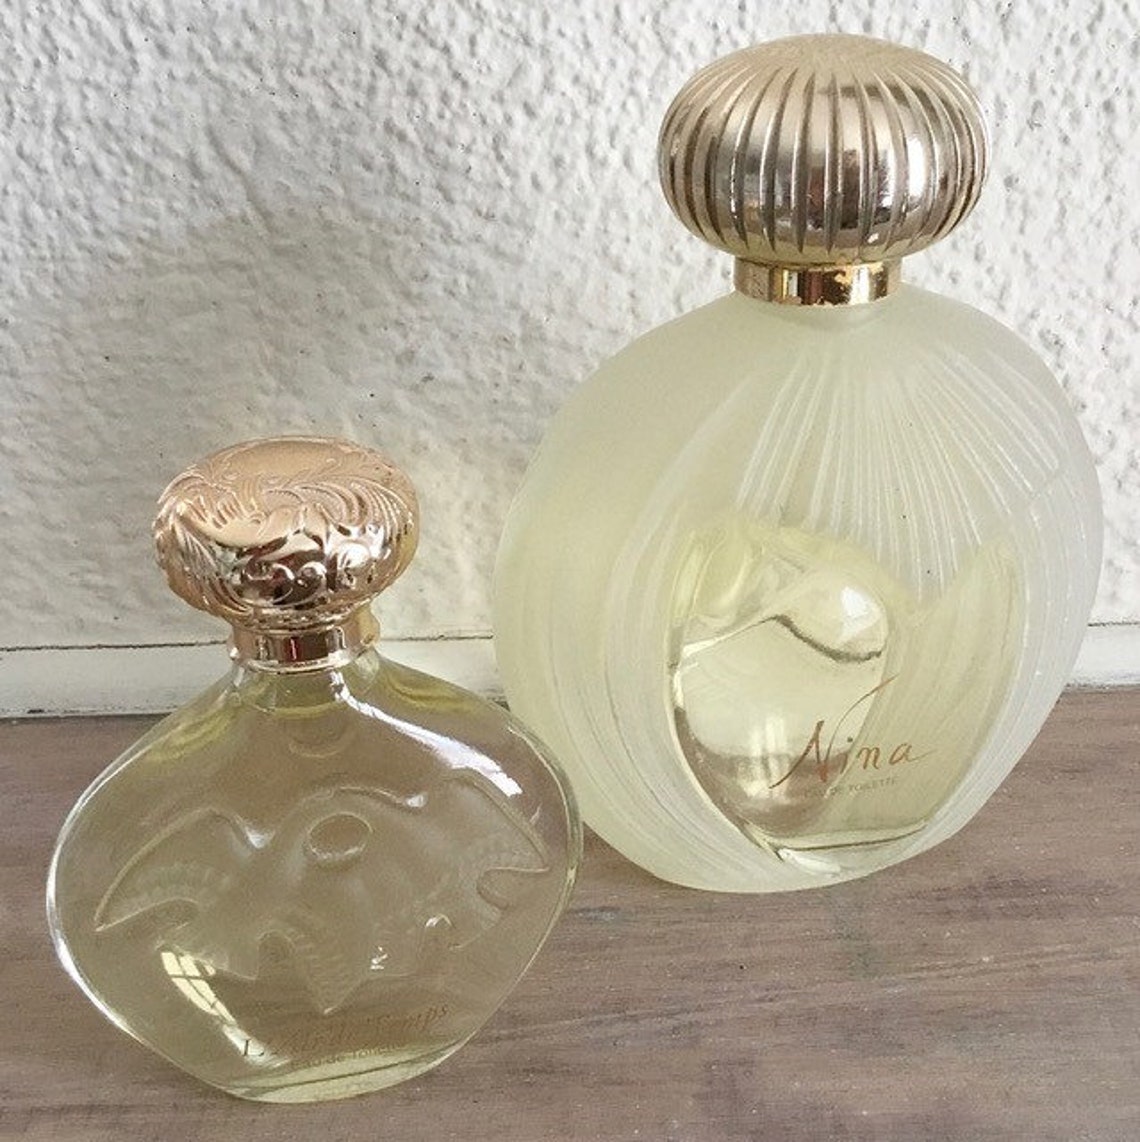 Nina Ricci Factice Perfume Bottles S/2 - Etsy UK